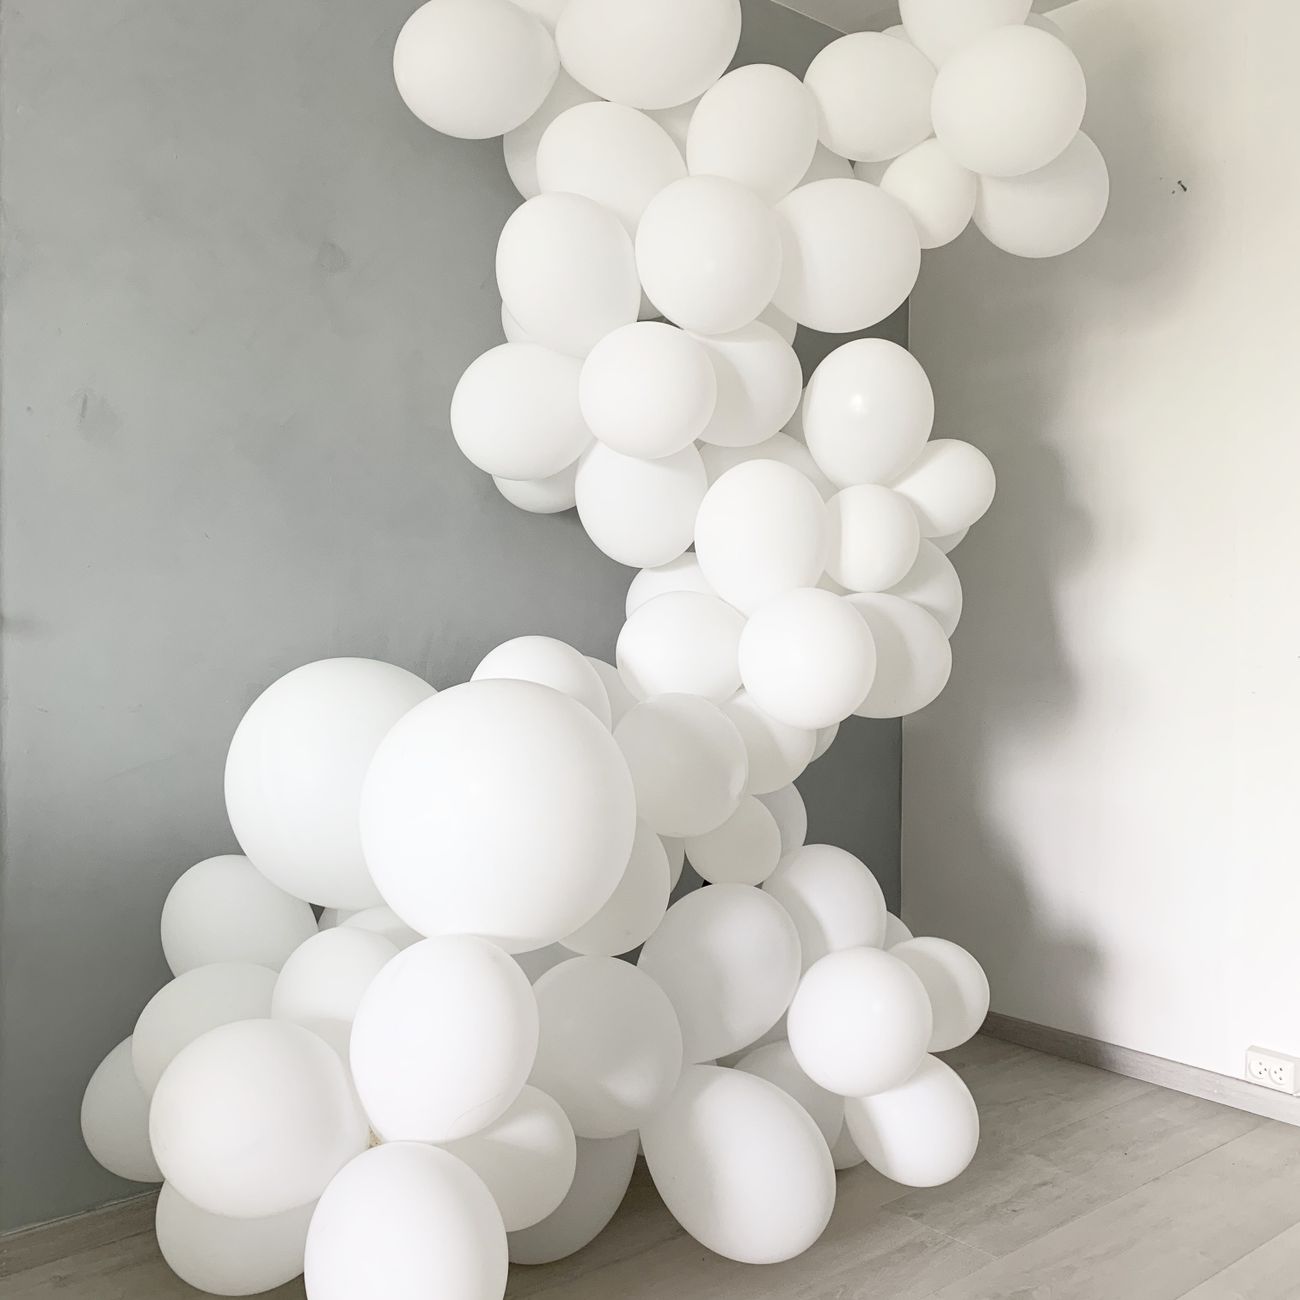 kb-ballonger-hvite-runde-store-4